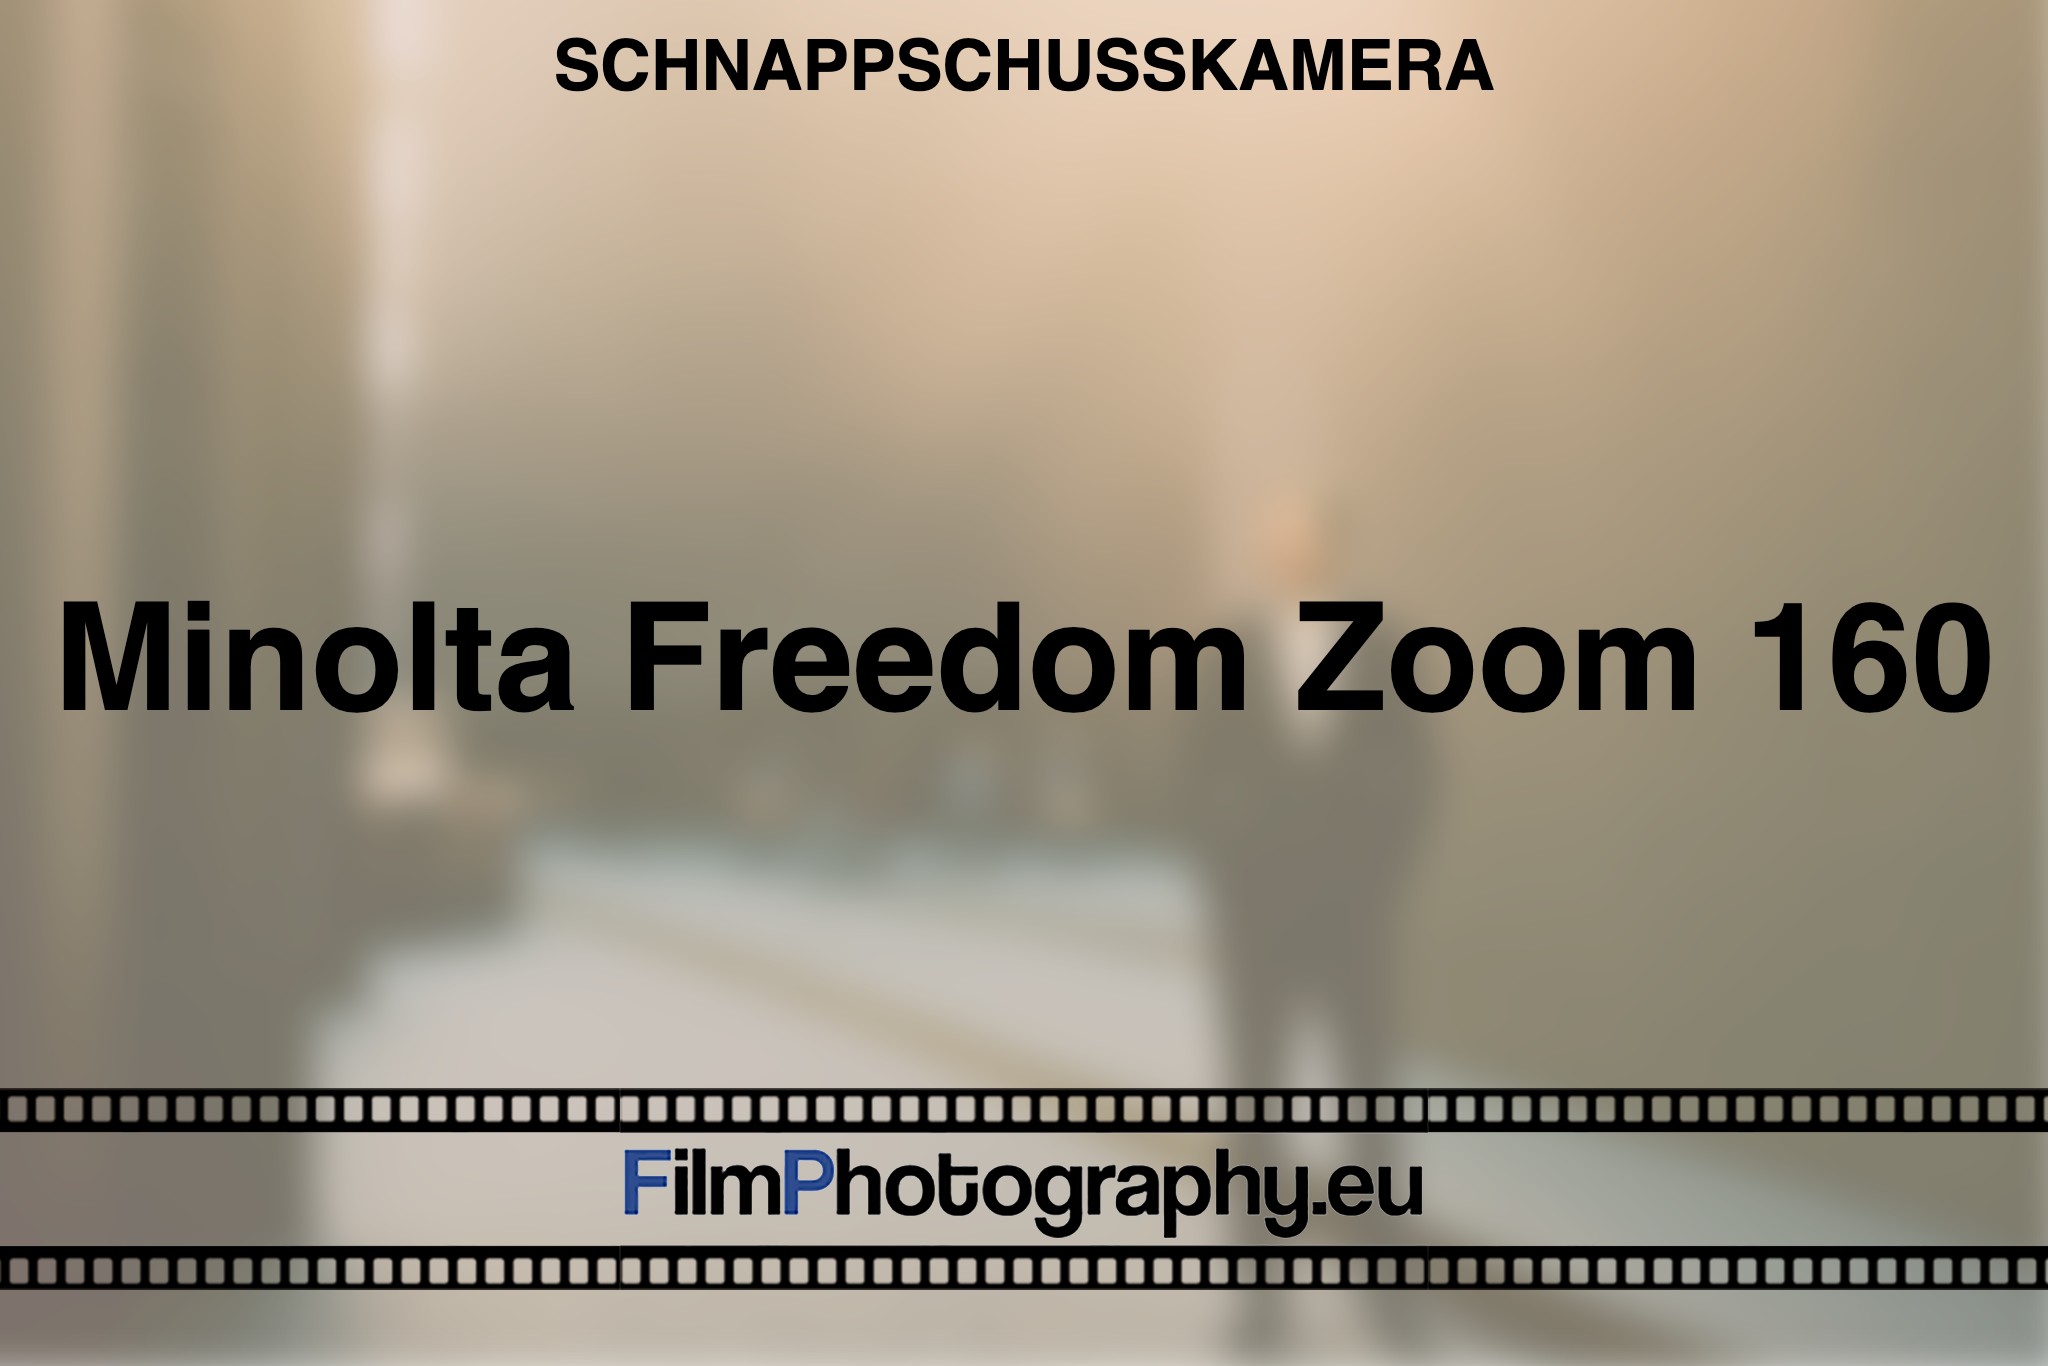 minolta-freedom-zoom-160-schnappschusskamera-bnv